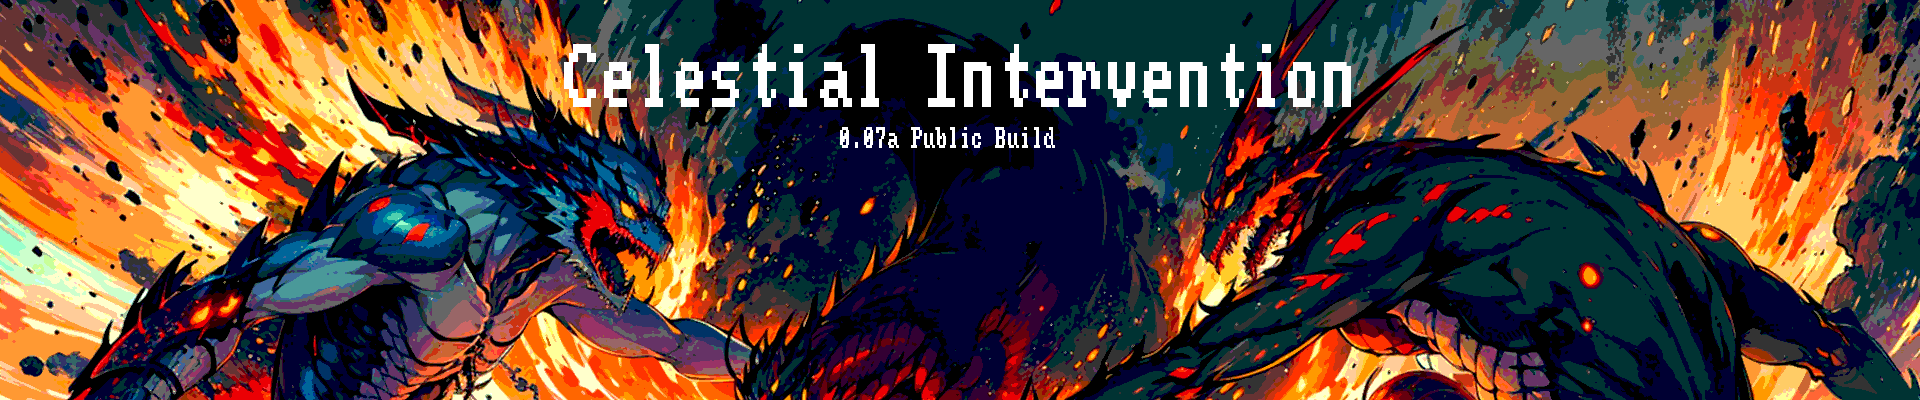 Celestial Intervention 0.04a Public Build